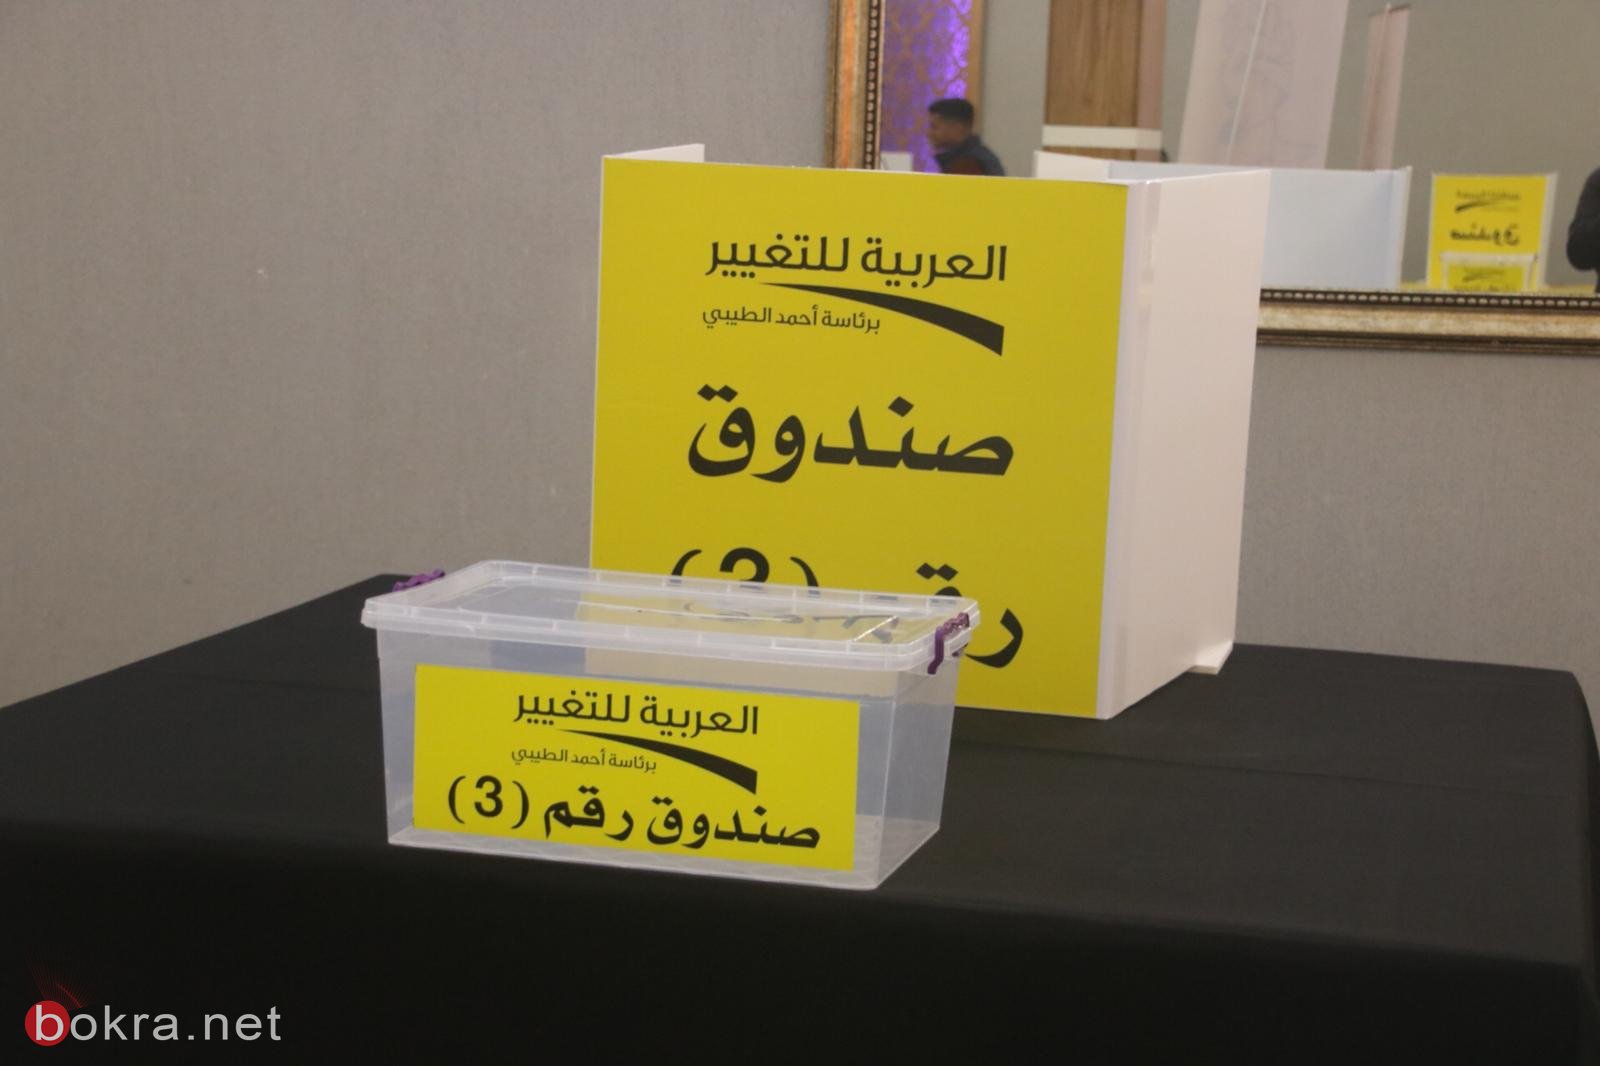 اليوم في قلنسوة: الانتخابات الداخليّة للحركة العربيّة للتغيير-0